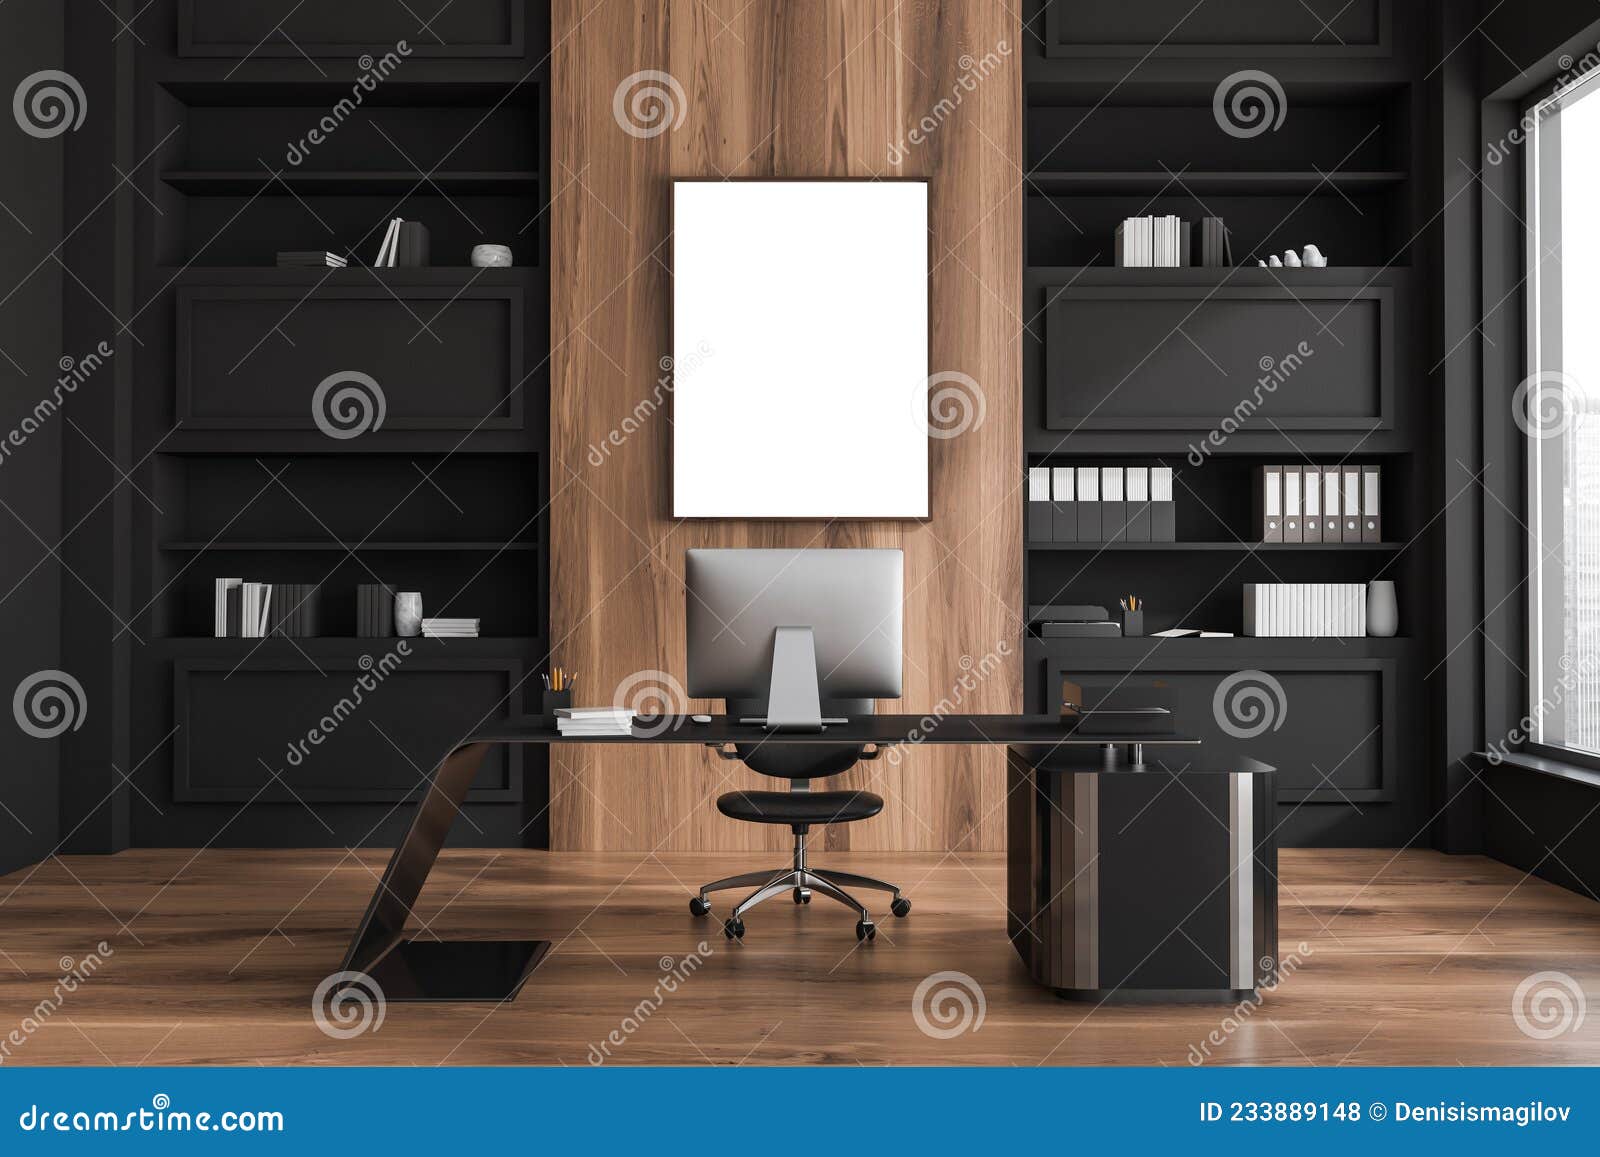 dark office design